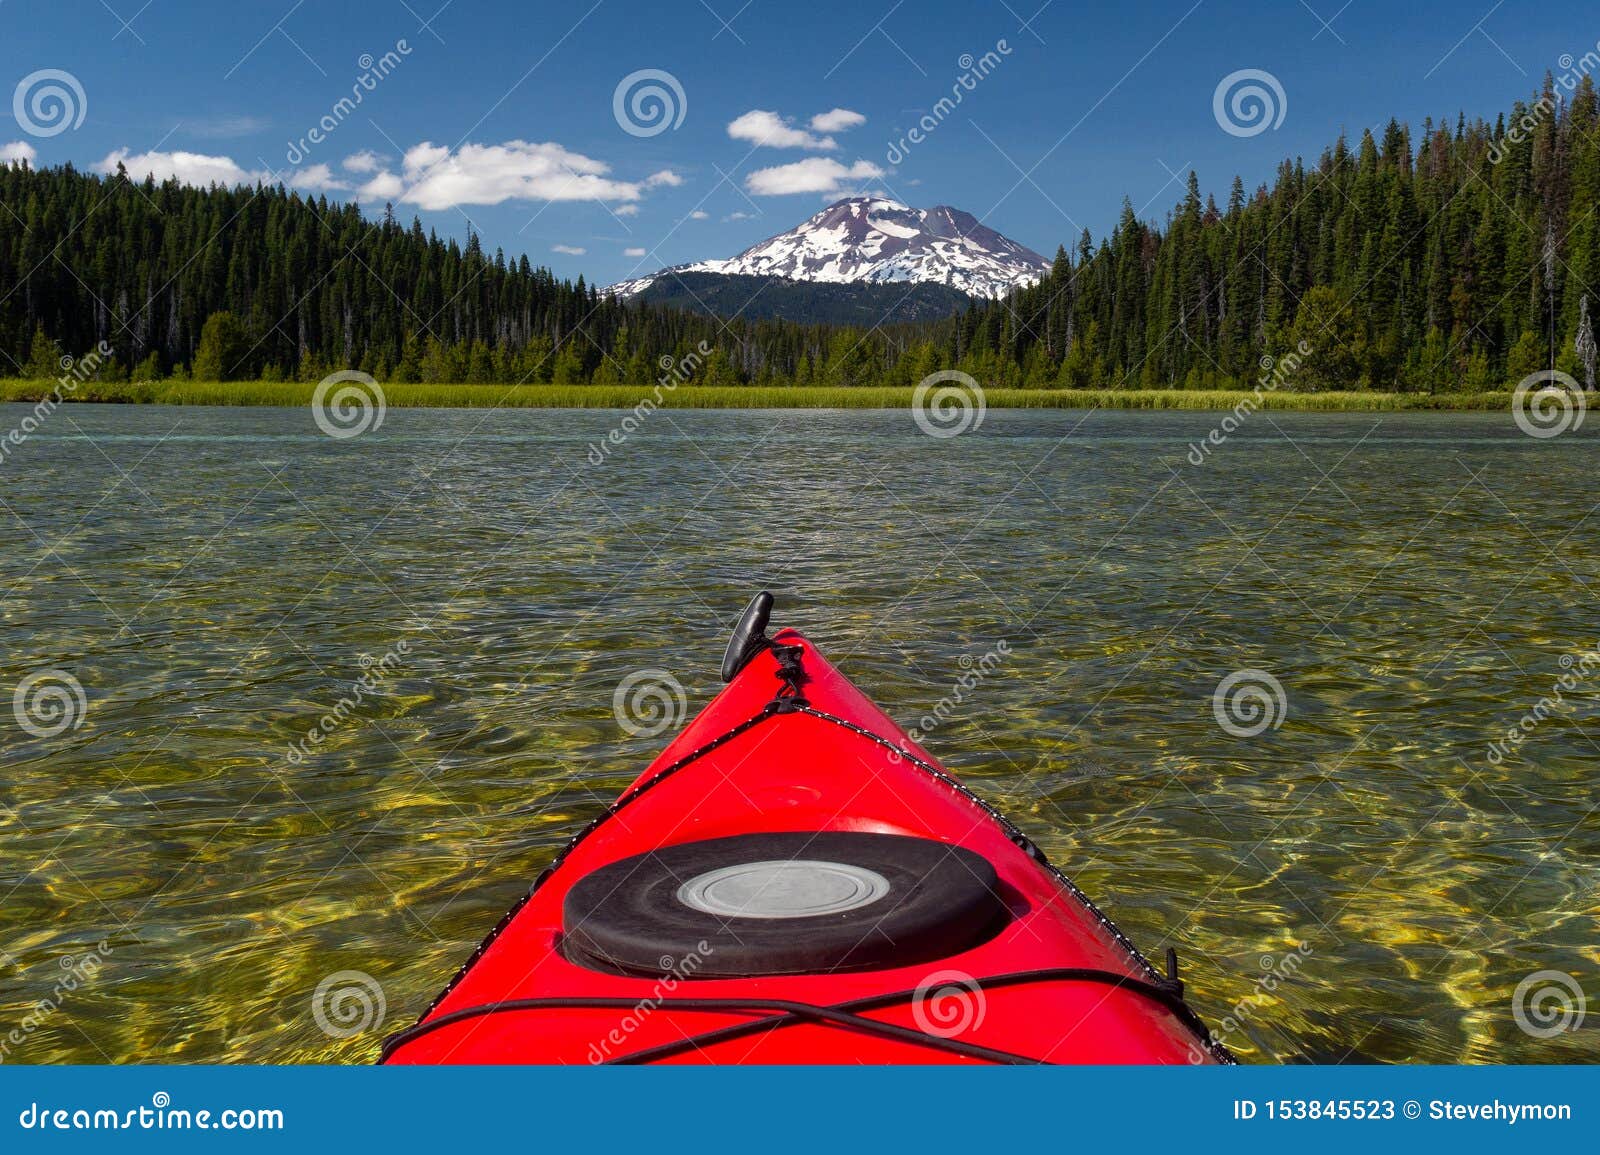 kayaking beautiful lake in summer toward mountain peak